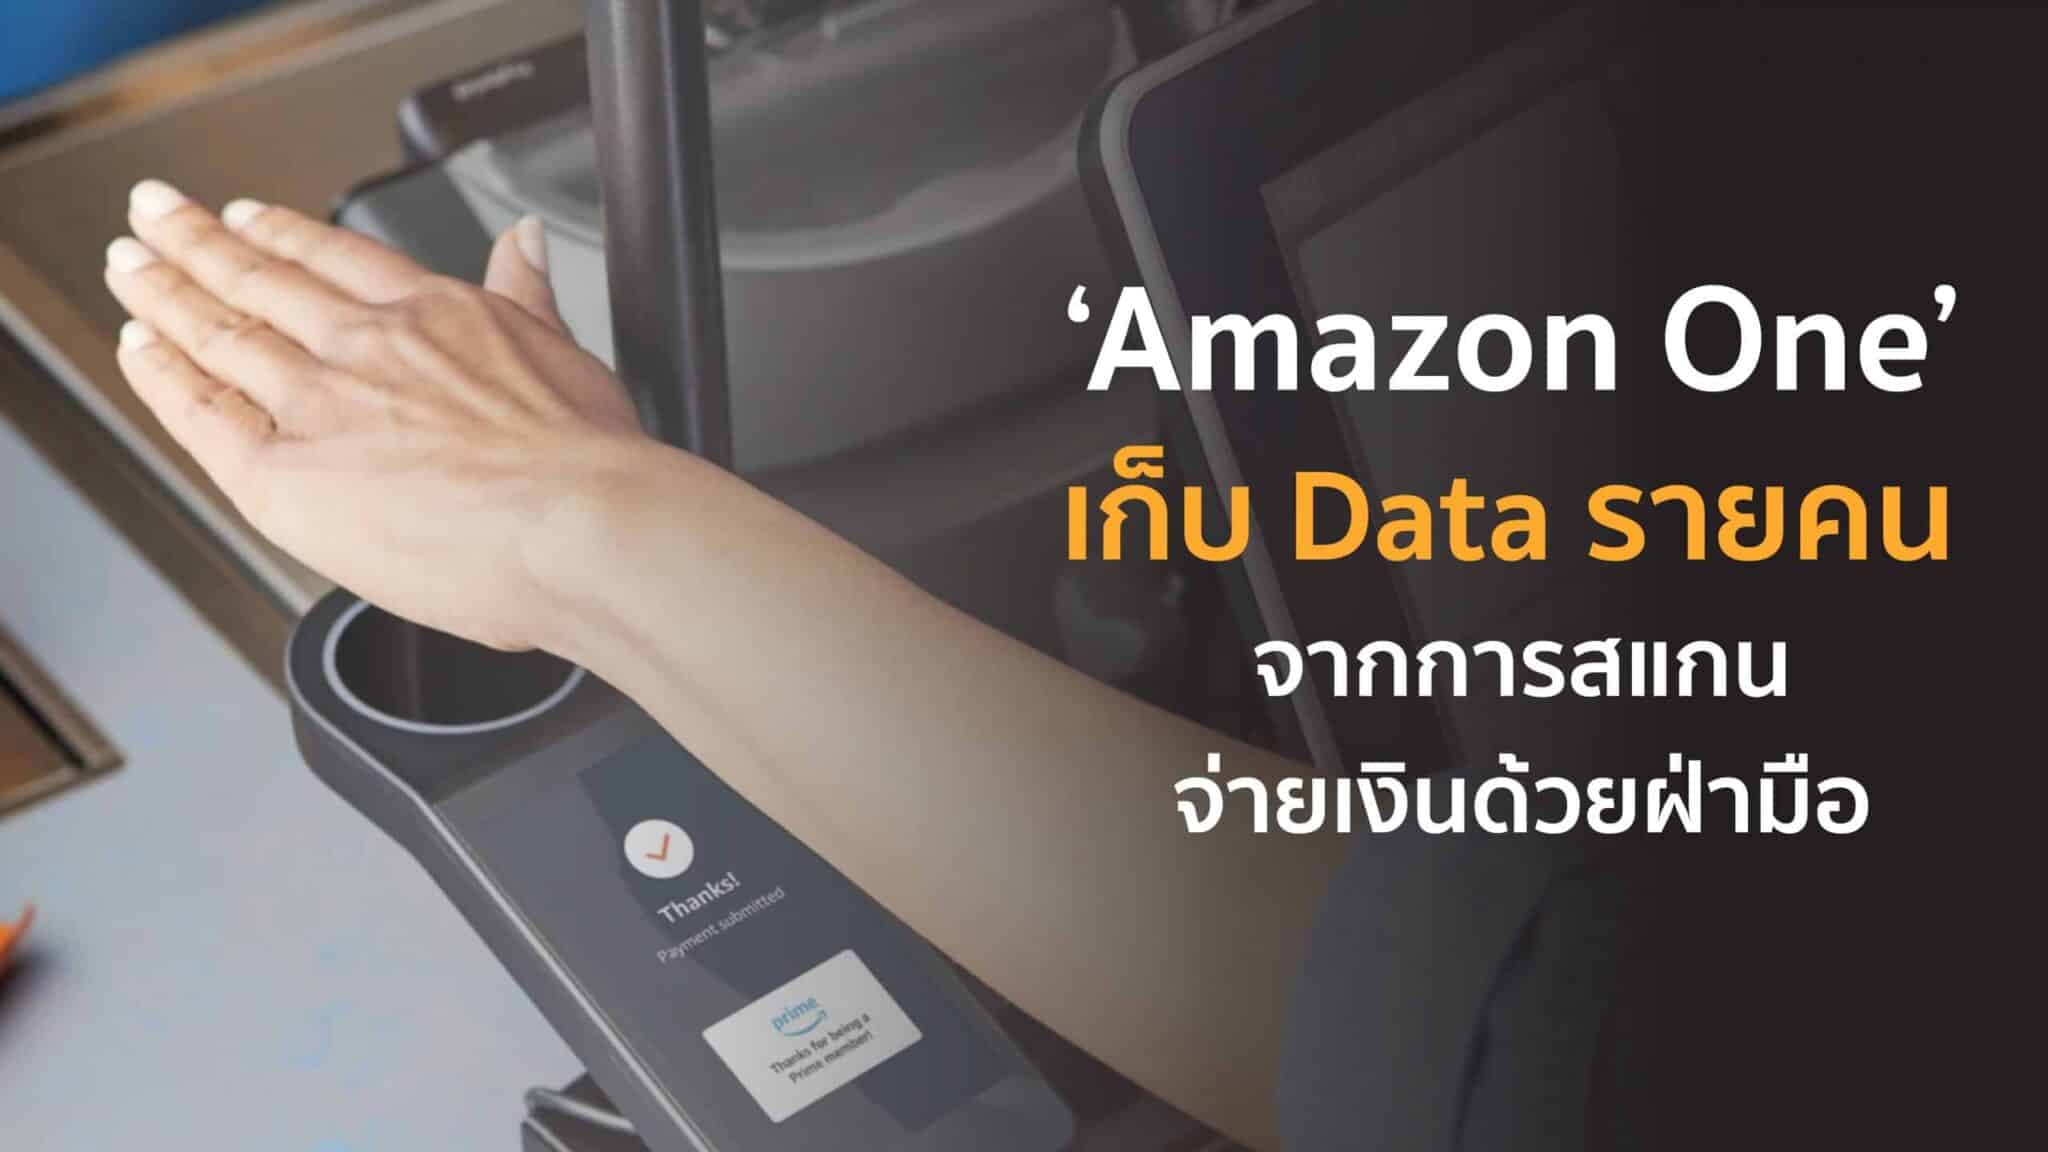 ‘Amazon One’ เก็บ Data รายคน จากการสแกนจ่ายเงินด้วยฝ่ามือ